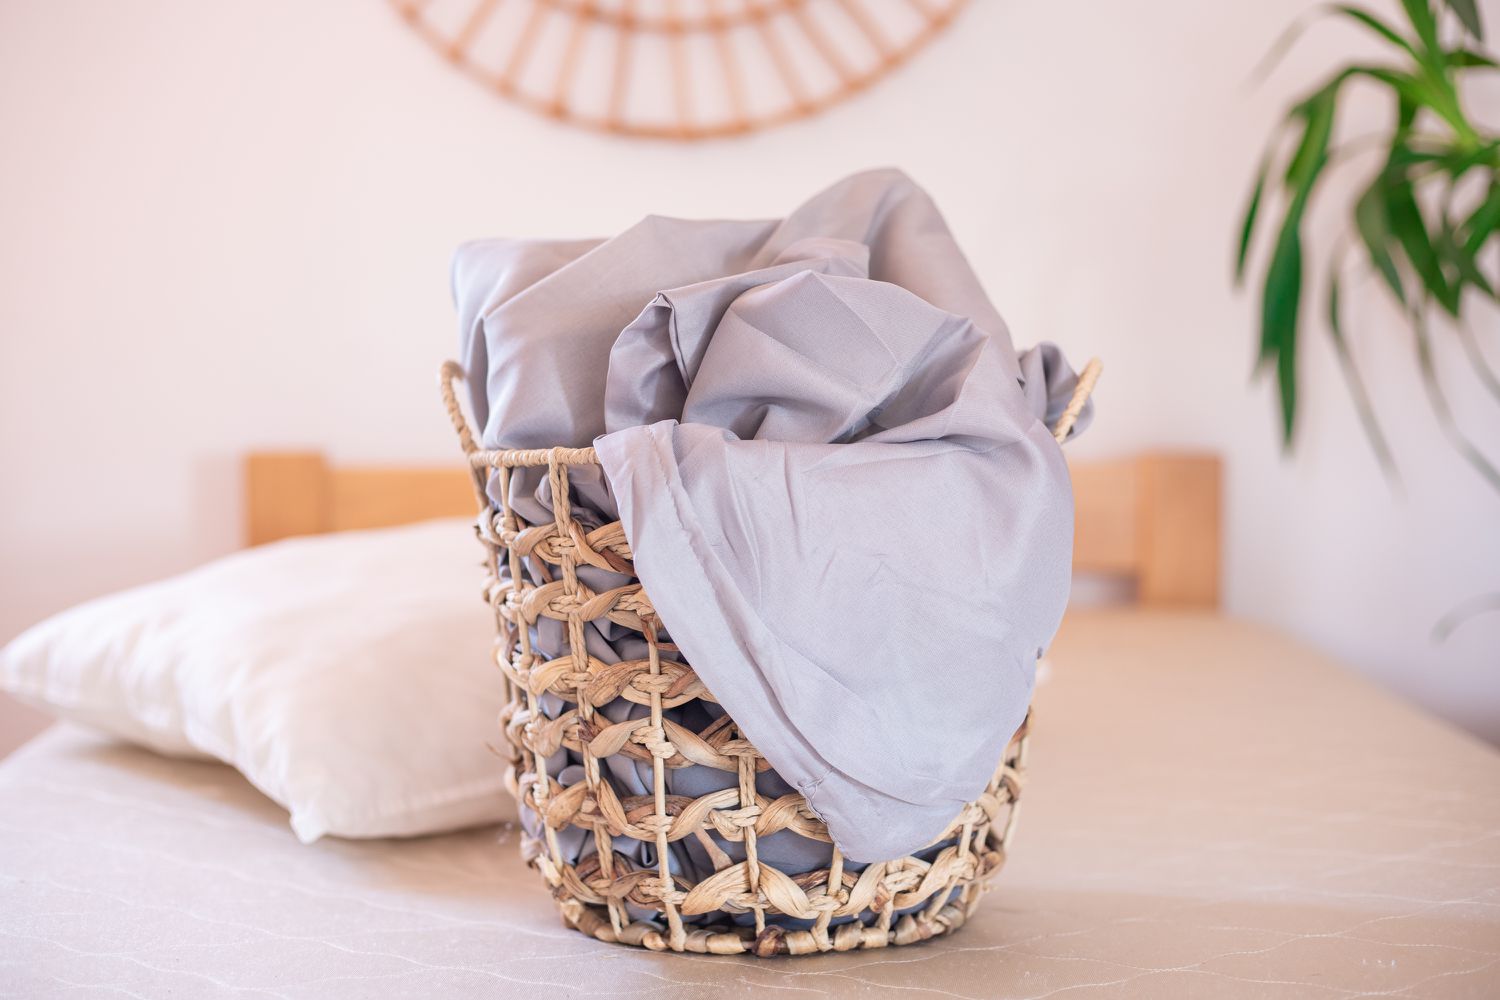 Hellgraue Bambuslaken in einem geflochtenen Korb auf einem kahlen Bett